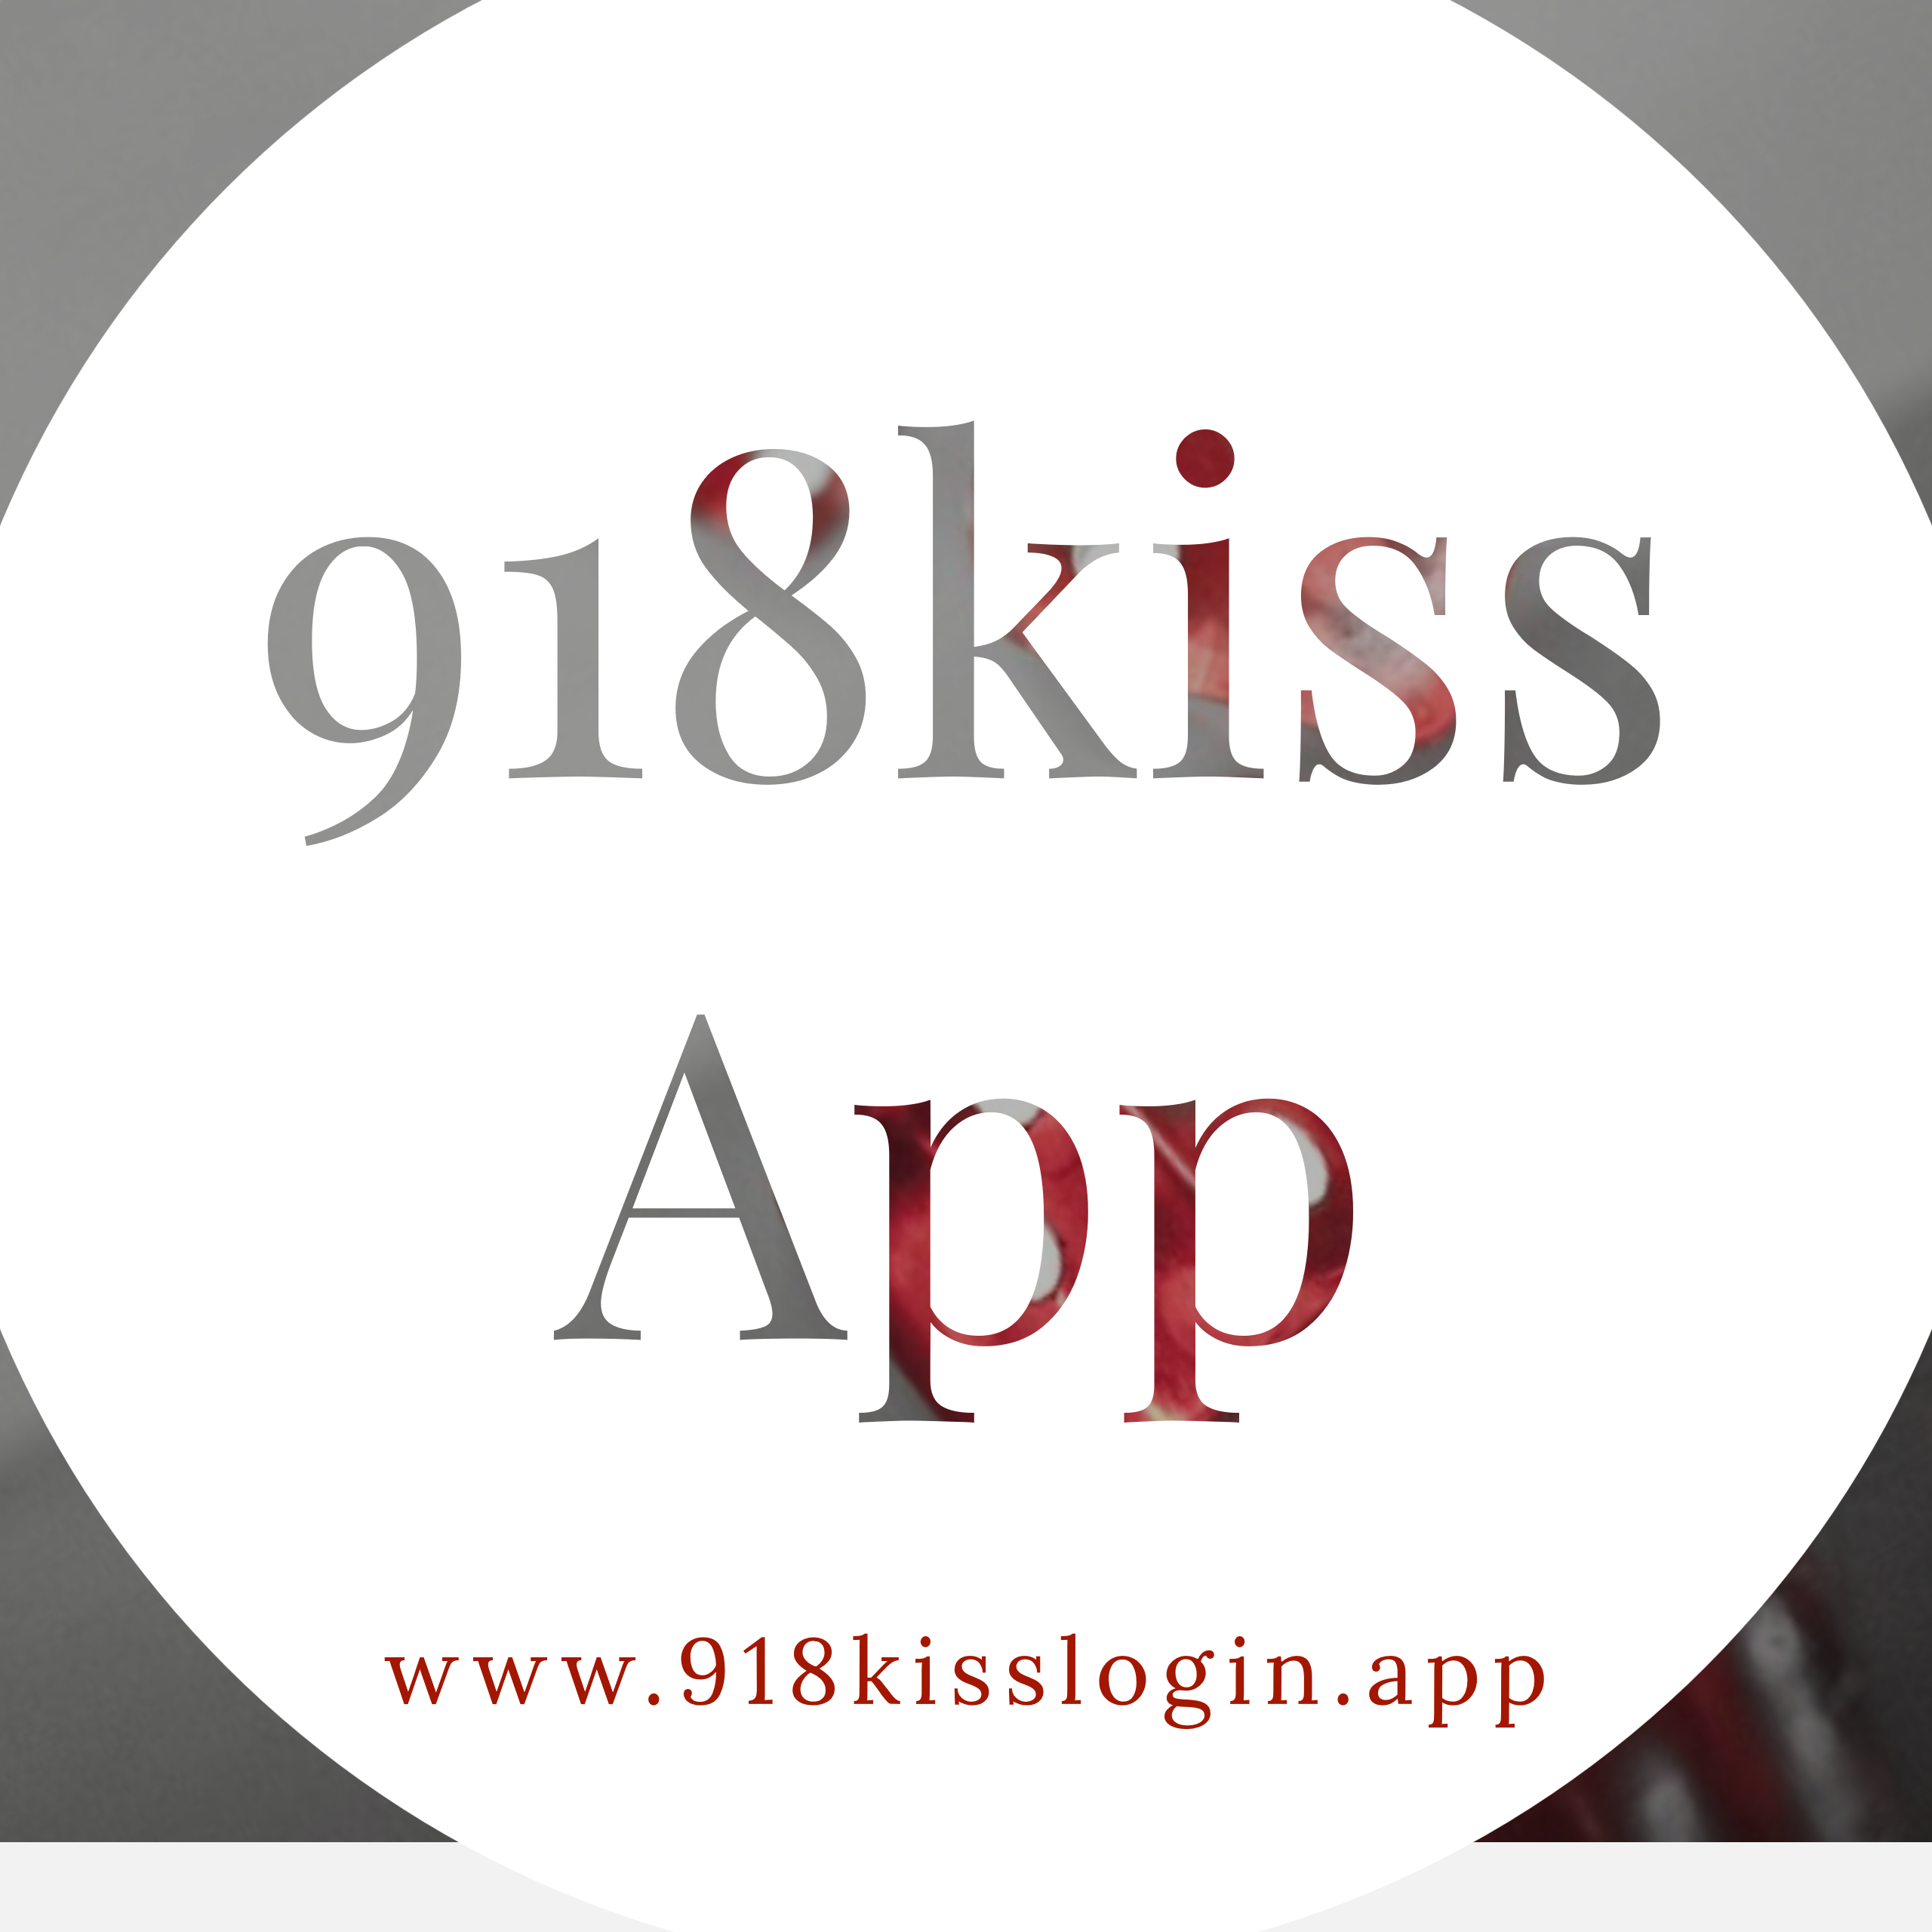 918kiss app